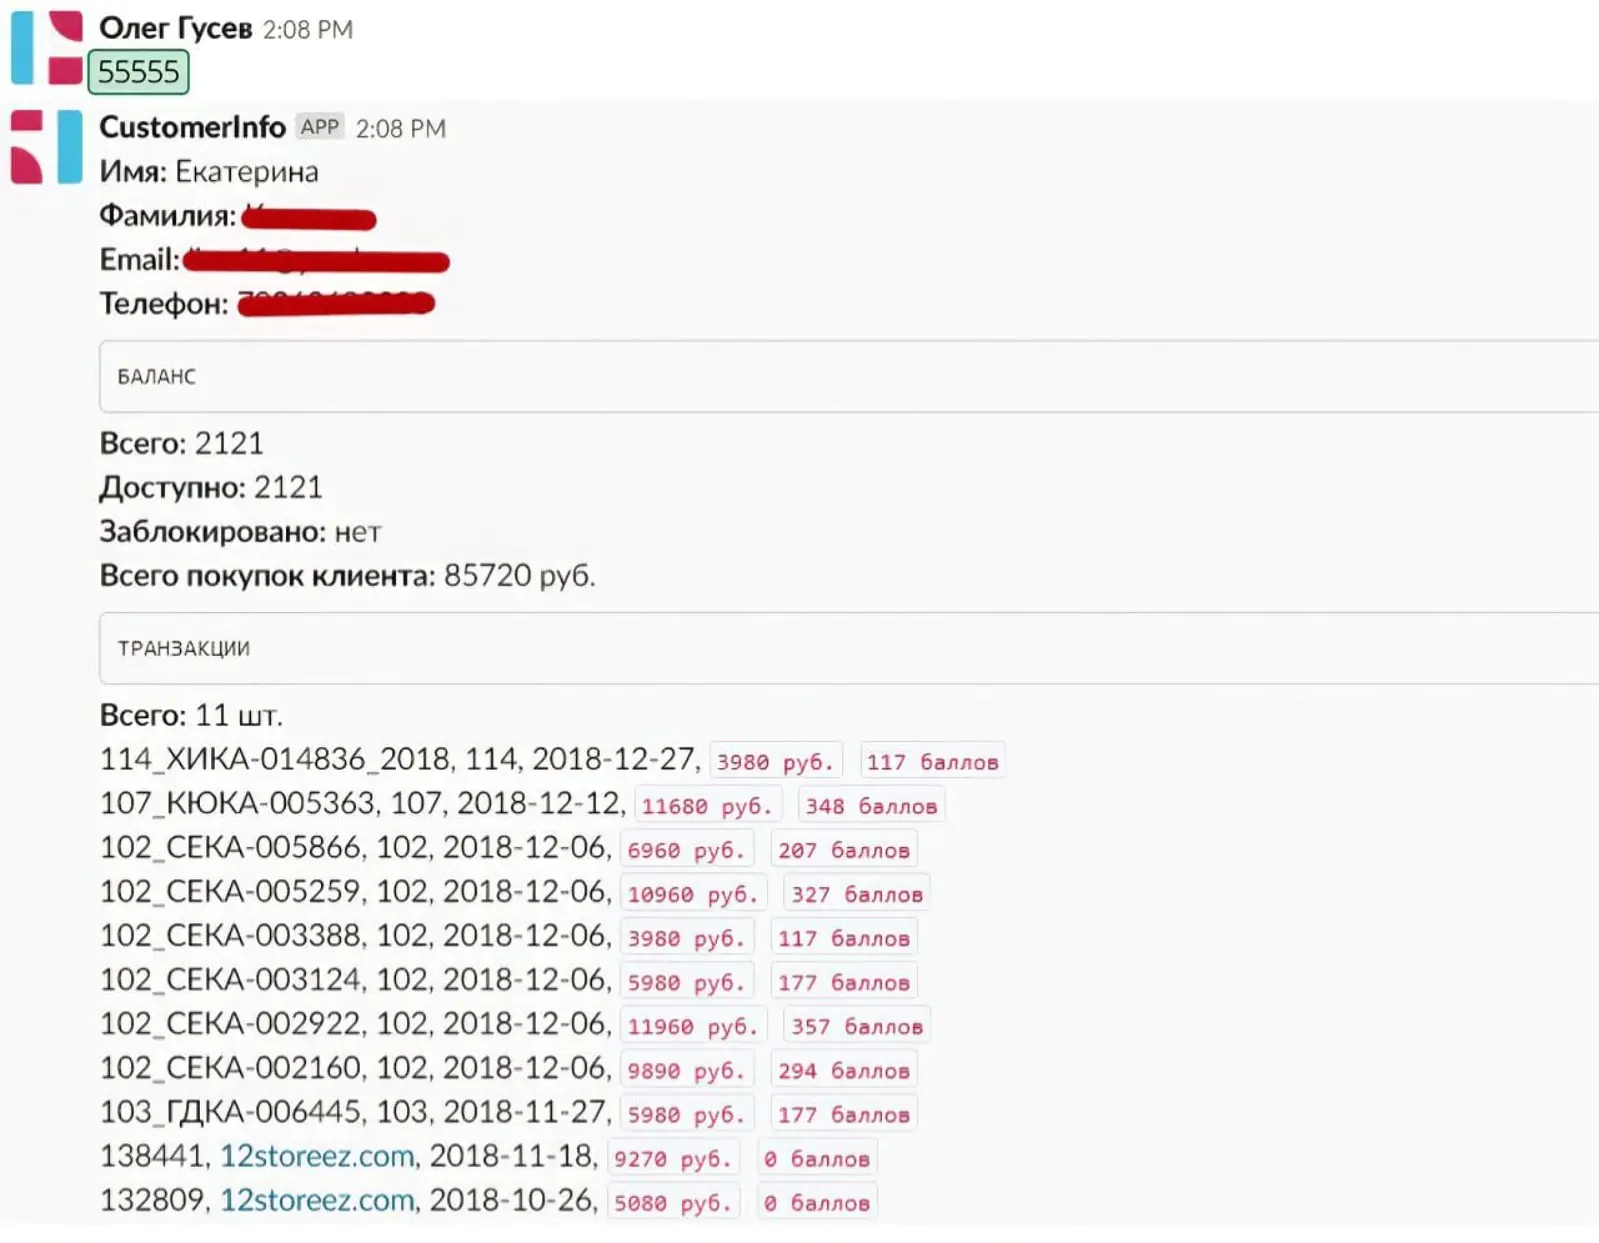 Сотрудник получает в Slack информацию о бонусном счете